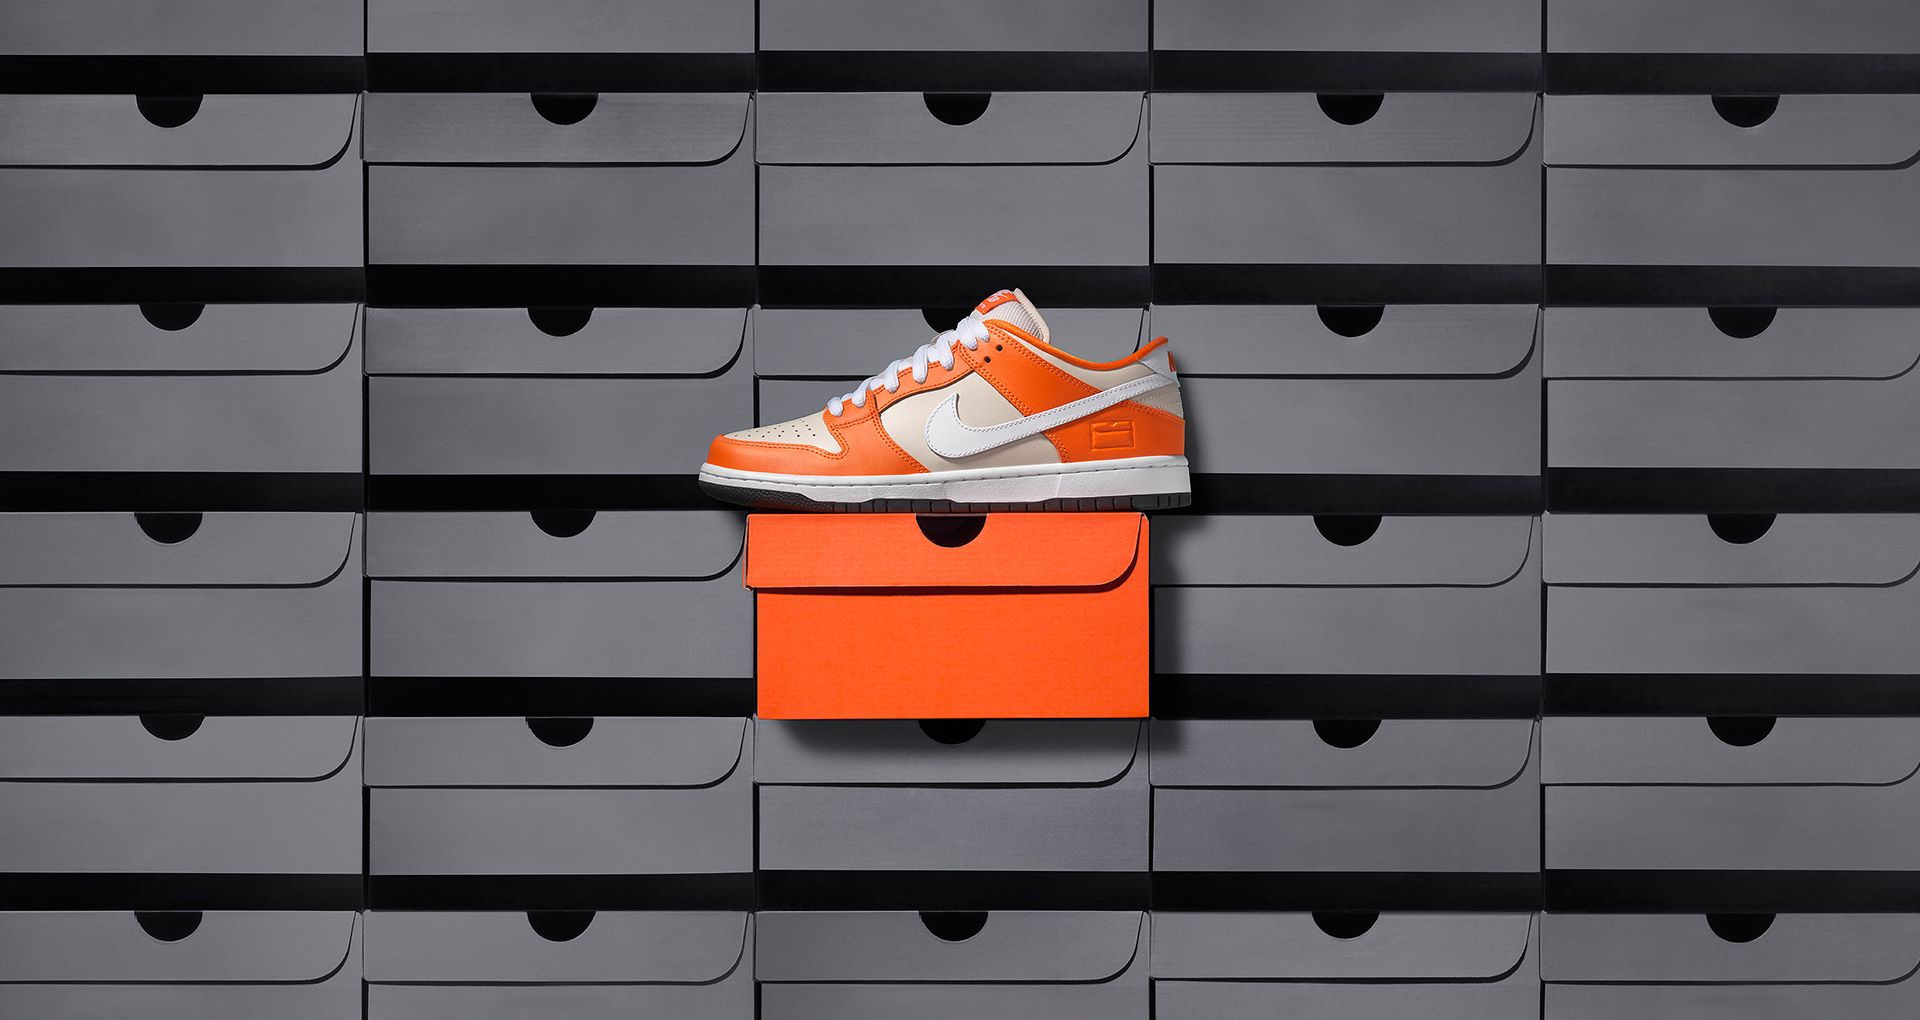 Кроссовки адидас в виде коробки. Nike SB Dunk Low “Orange Box” 2017. Nike SB Dunk Low Box. Nike Orange Box. Nike Dunk Low коробка.